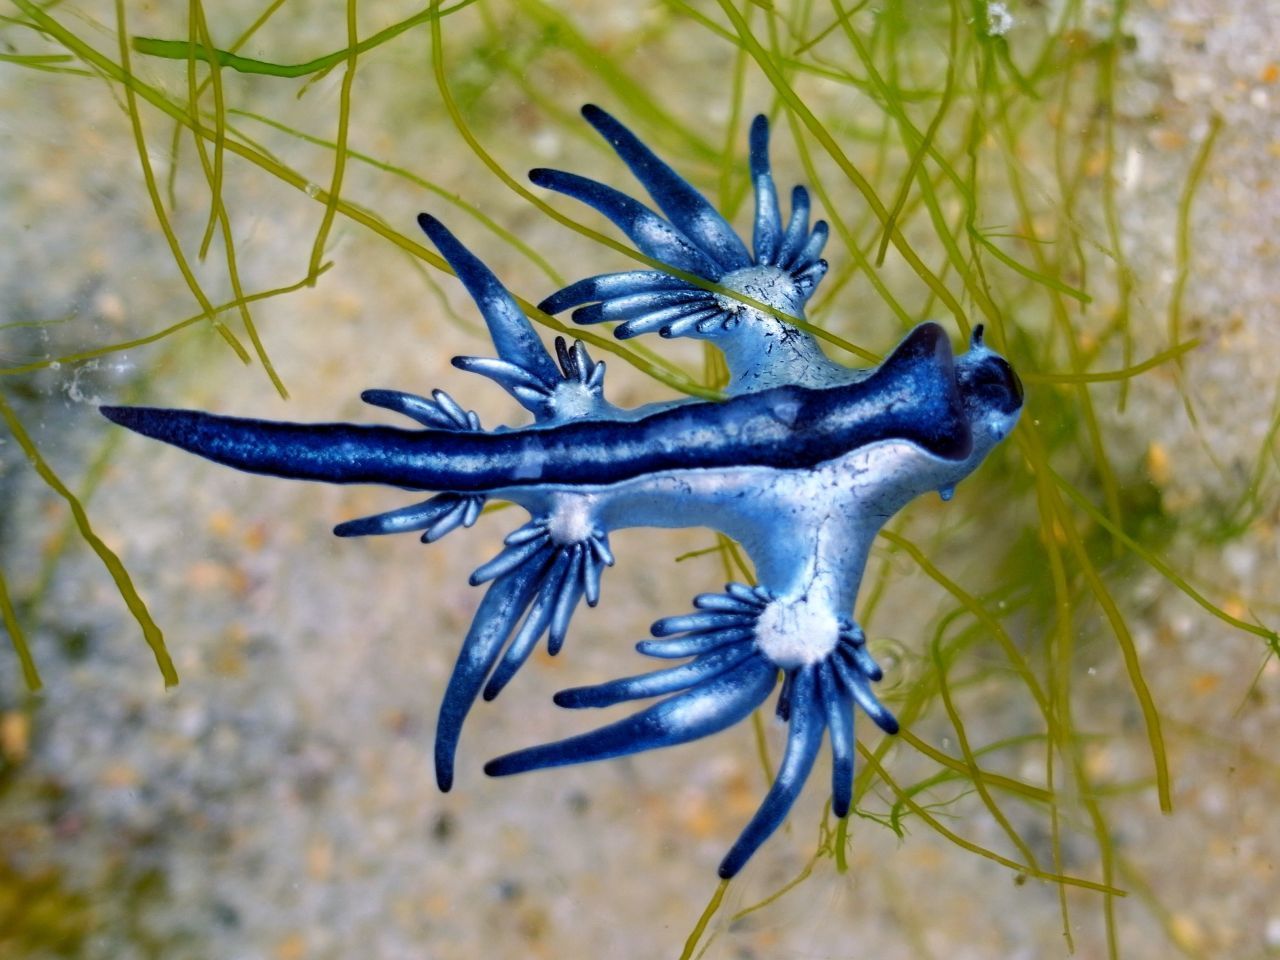 Die Blaue Ozeanschnecke, auch Blauer Drachen genannt, wird nur maximal fünf Zentimeter lang, ist aber nicht zu unterschätzen. Ihre Stacheln bewaffnen sie mit Gift gegen Fressfeinde.